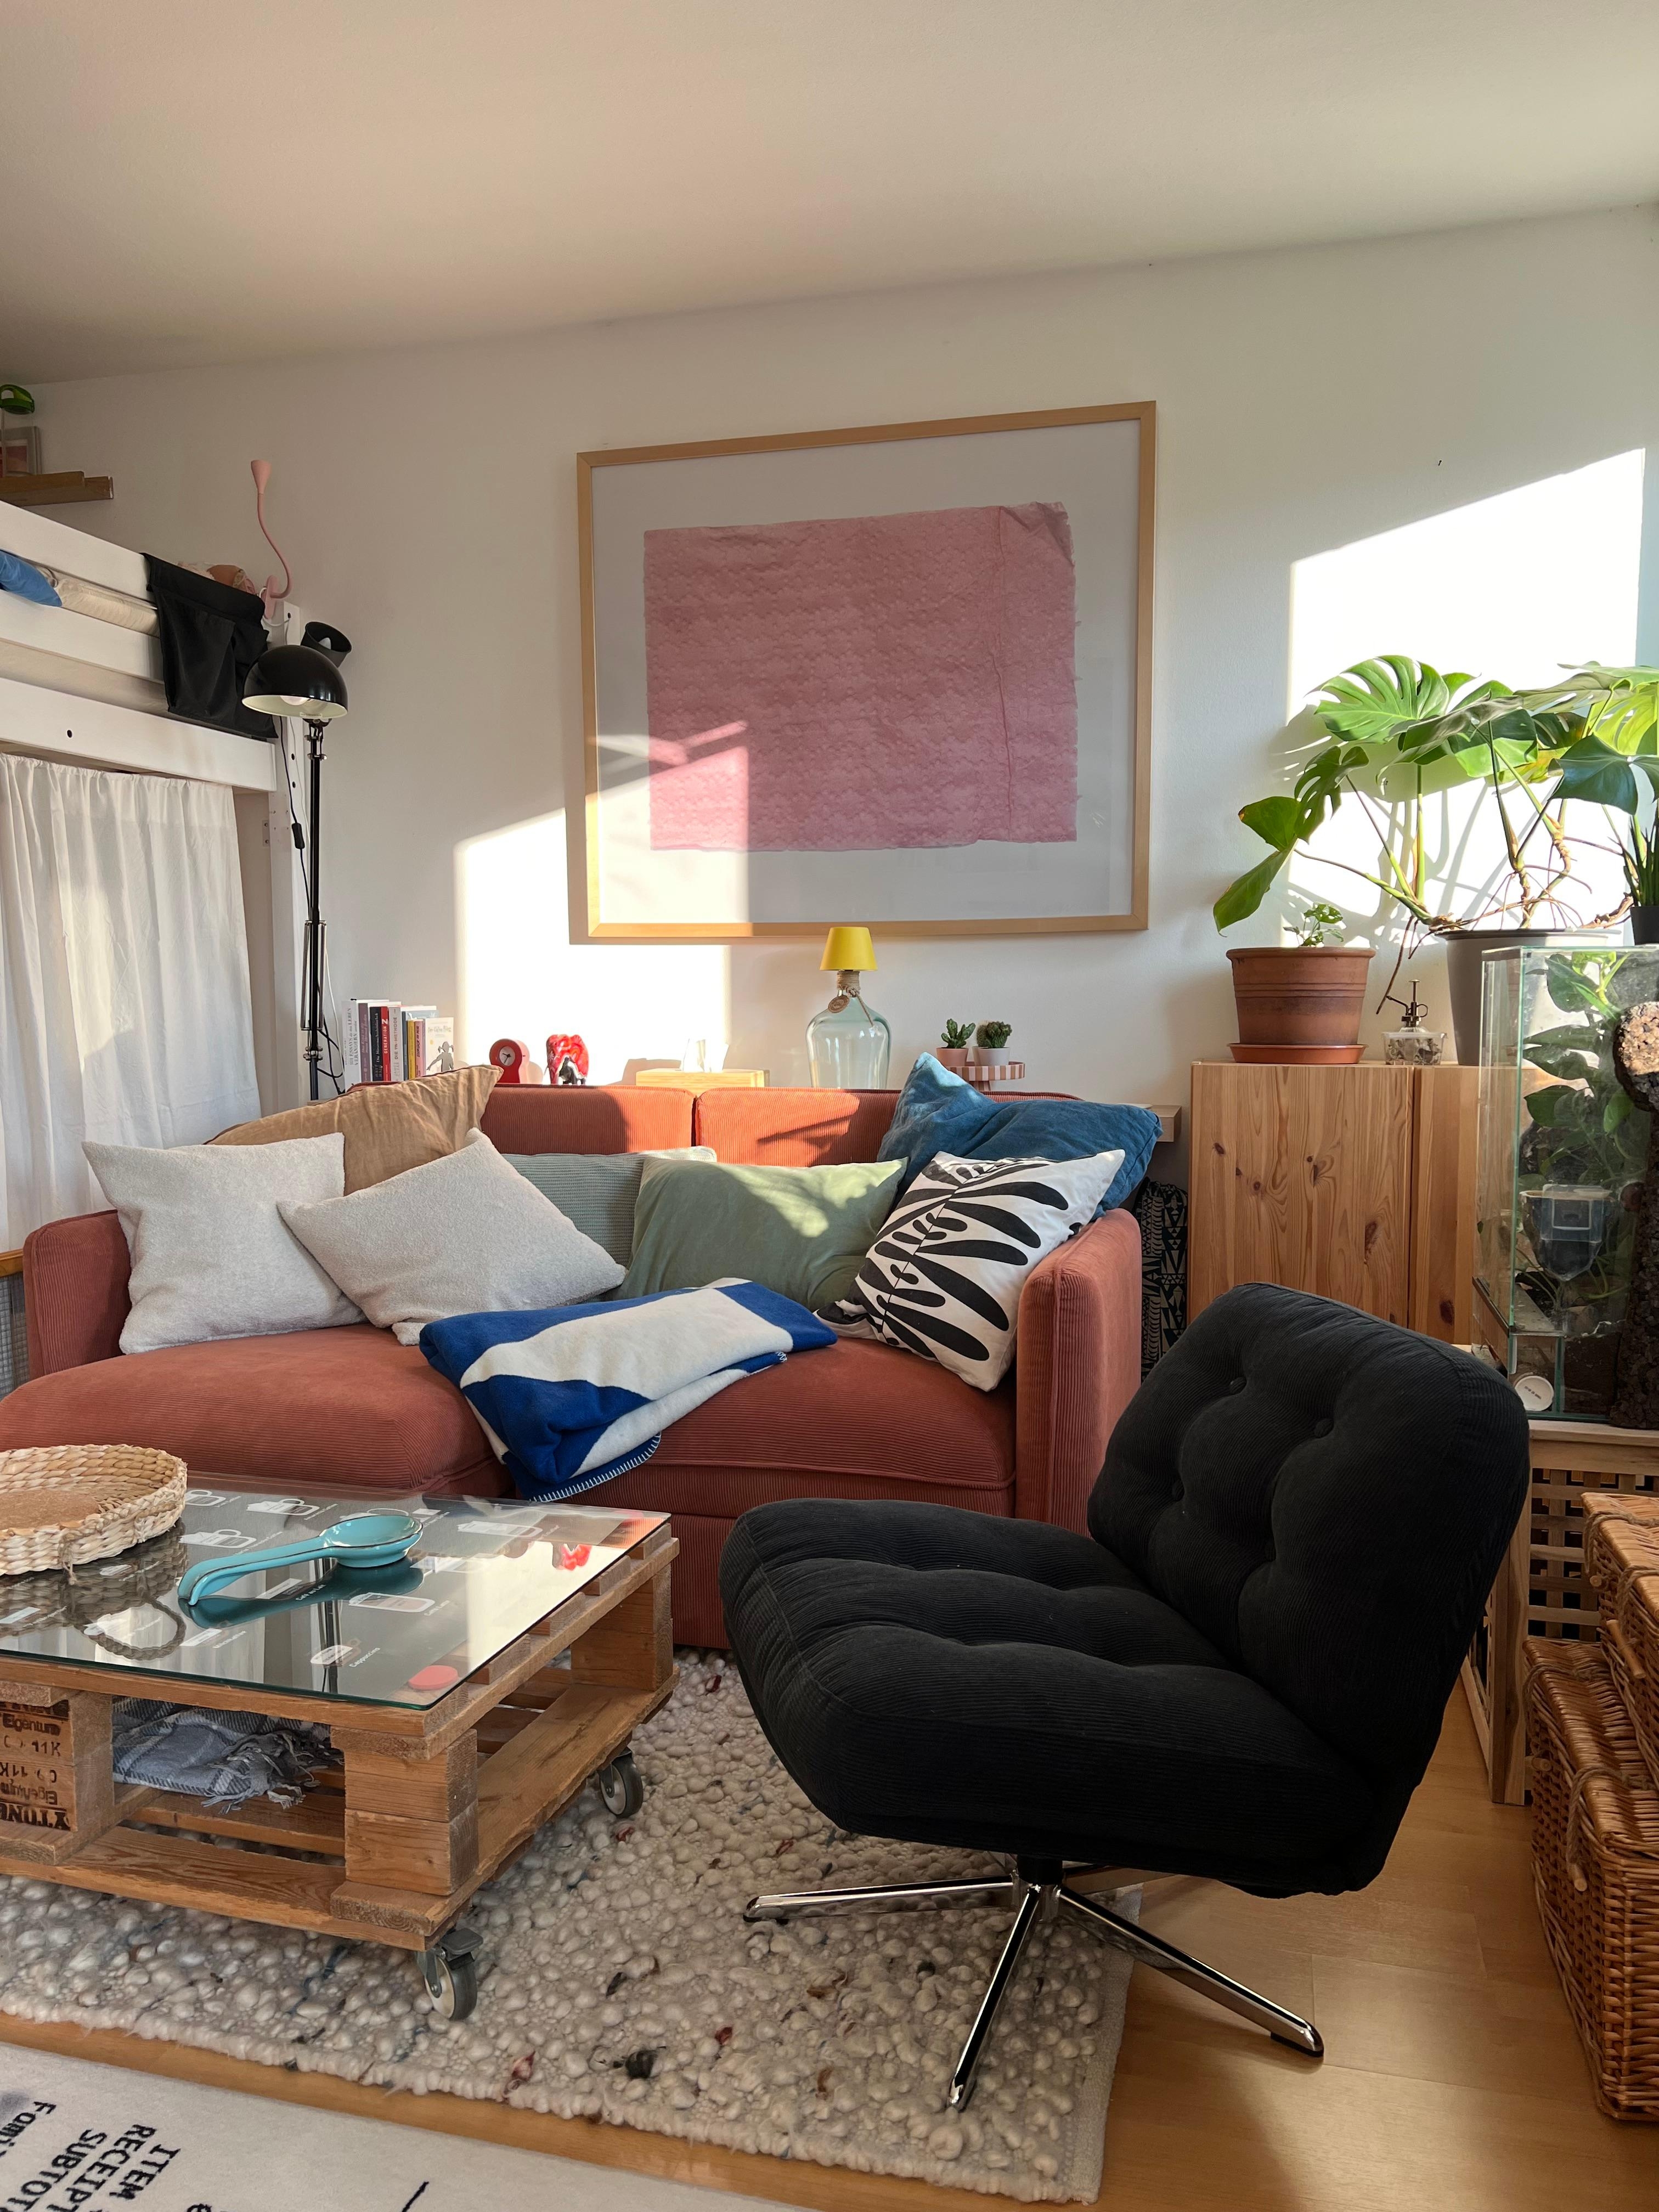 Wohnzimmer im Tinyloft
#livingroom #ikea #chair #kleinewohnung #dyvlinge #light